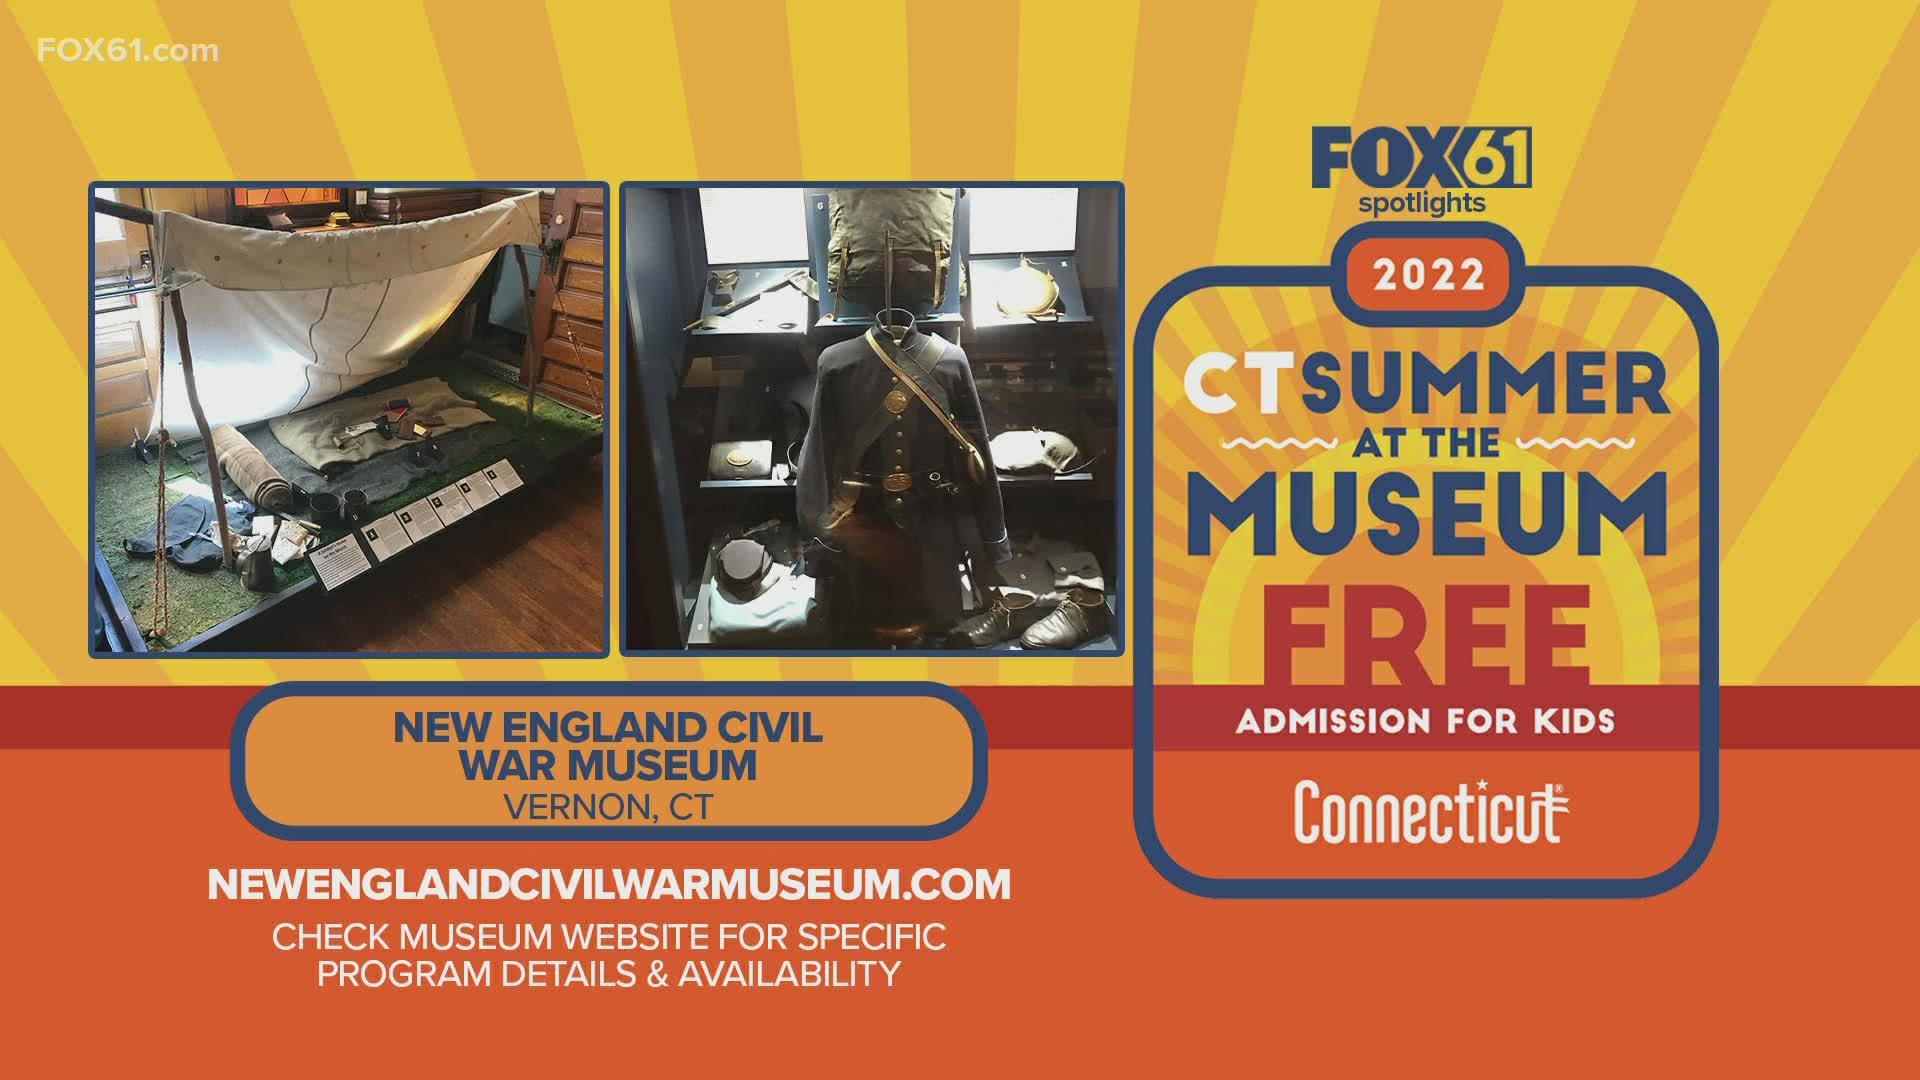 18岁及以下的儿童可以与康涅狄格州居民的成年人一起参观新英格兰内战博物馆。它将持续到9月5日。